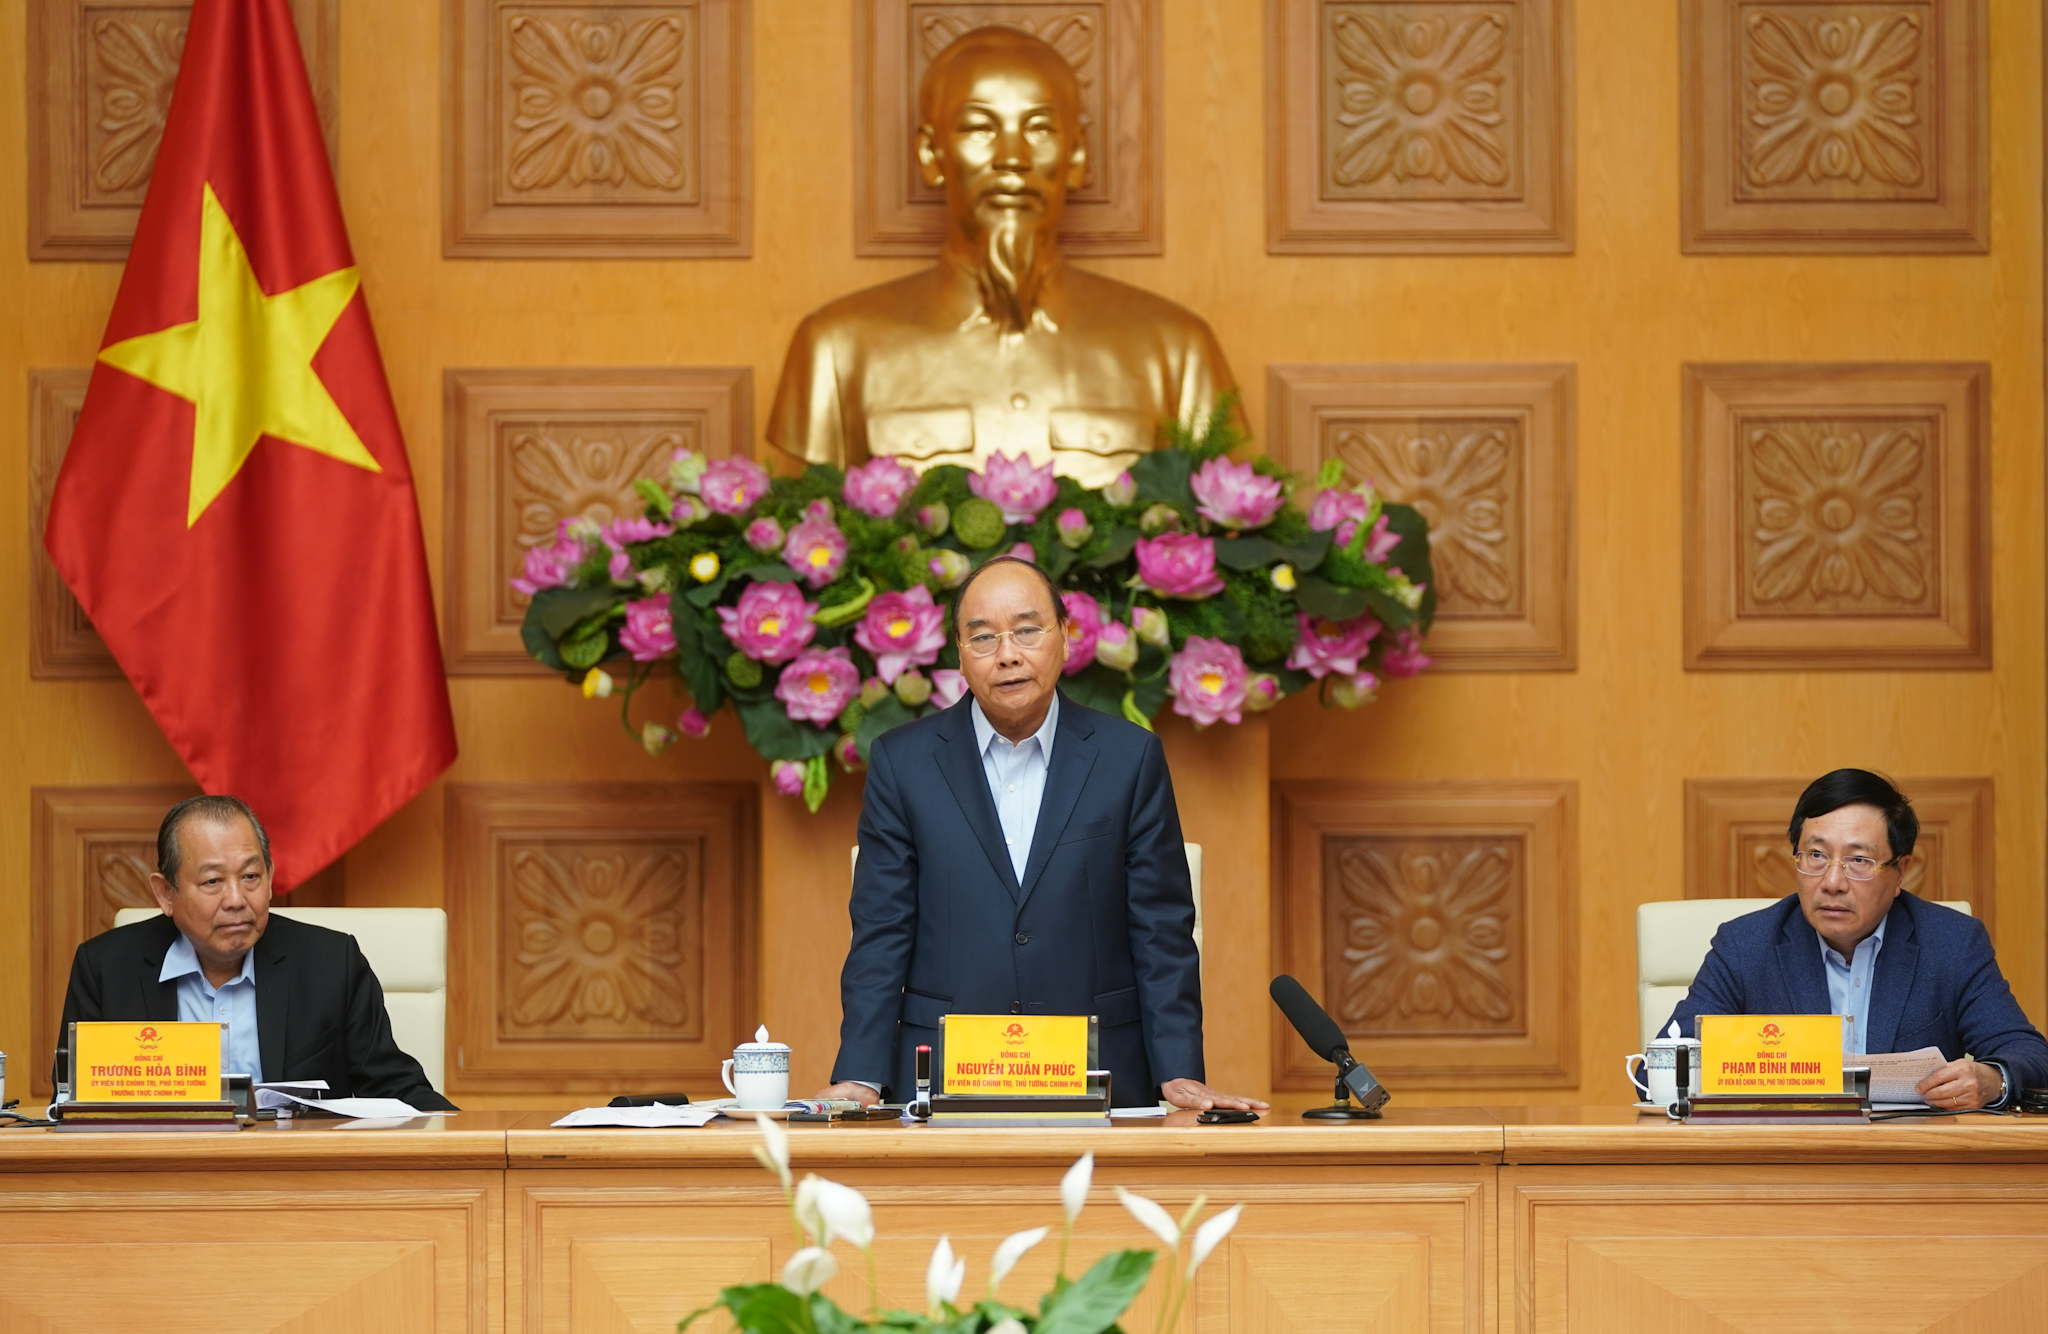 Thủ tướng Nguyễn Xuân Phúc: Ngành tài chính đáp ứng mọi nhu cầu chống dịch bệnh đúng mức, kịp thời, hiệu quả.